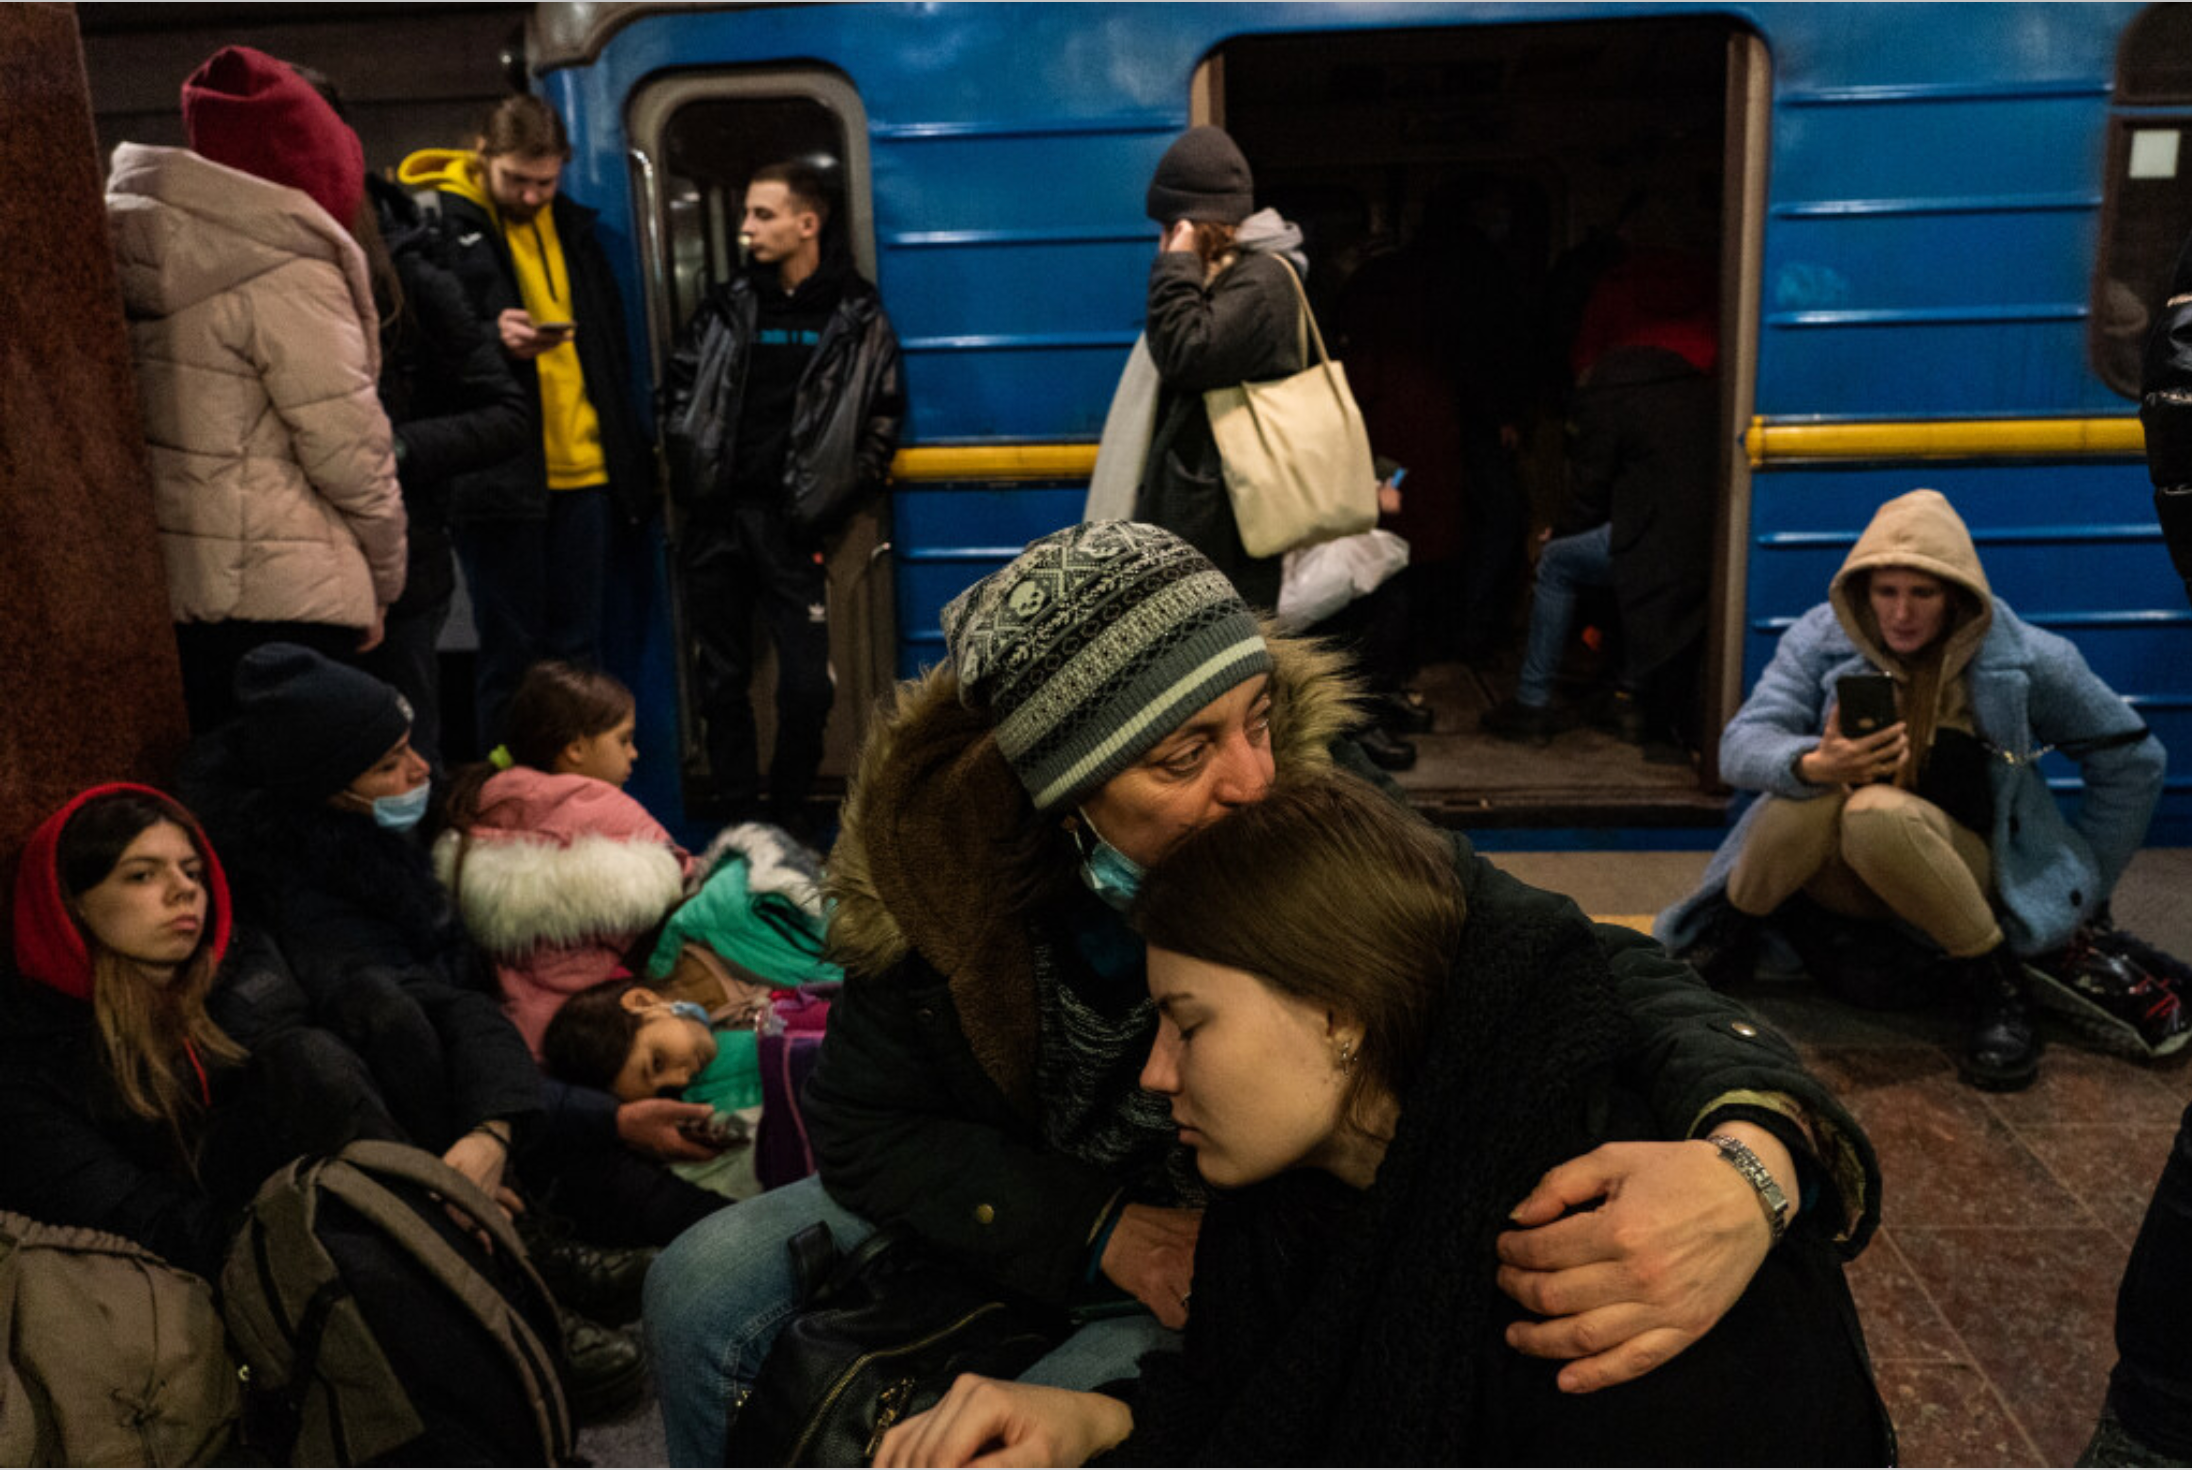 Կիևում գիշերվանից թե օդային հարվածներ են, թե ցամաքային՝ ծանր հրետանիներով, շատերը մետրոյի կայարաններում են գիշերել. Ուկրաինայի հայերի միության ներկայացուցիչ